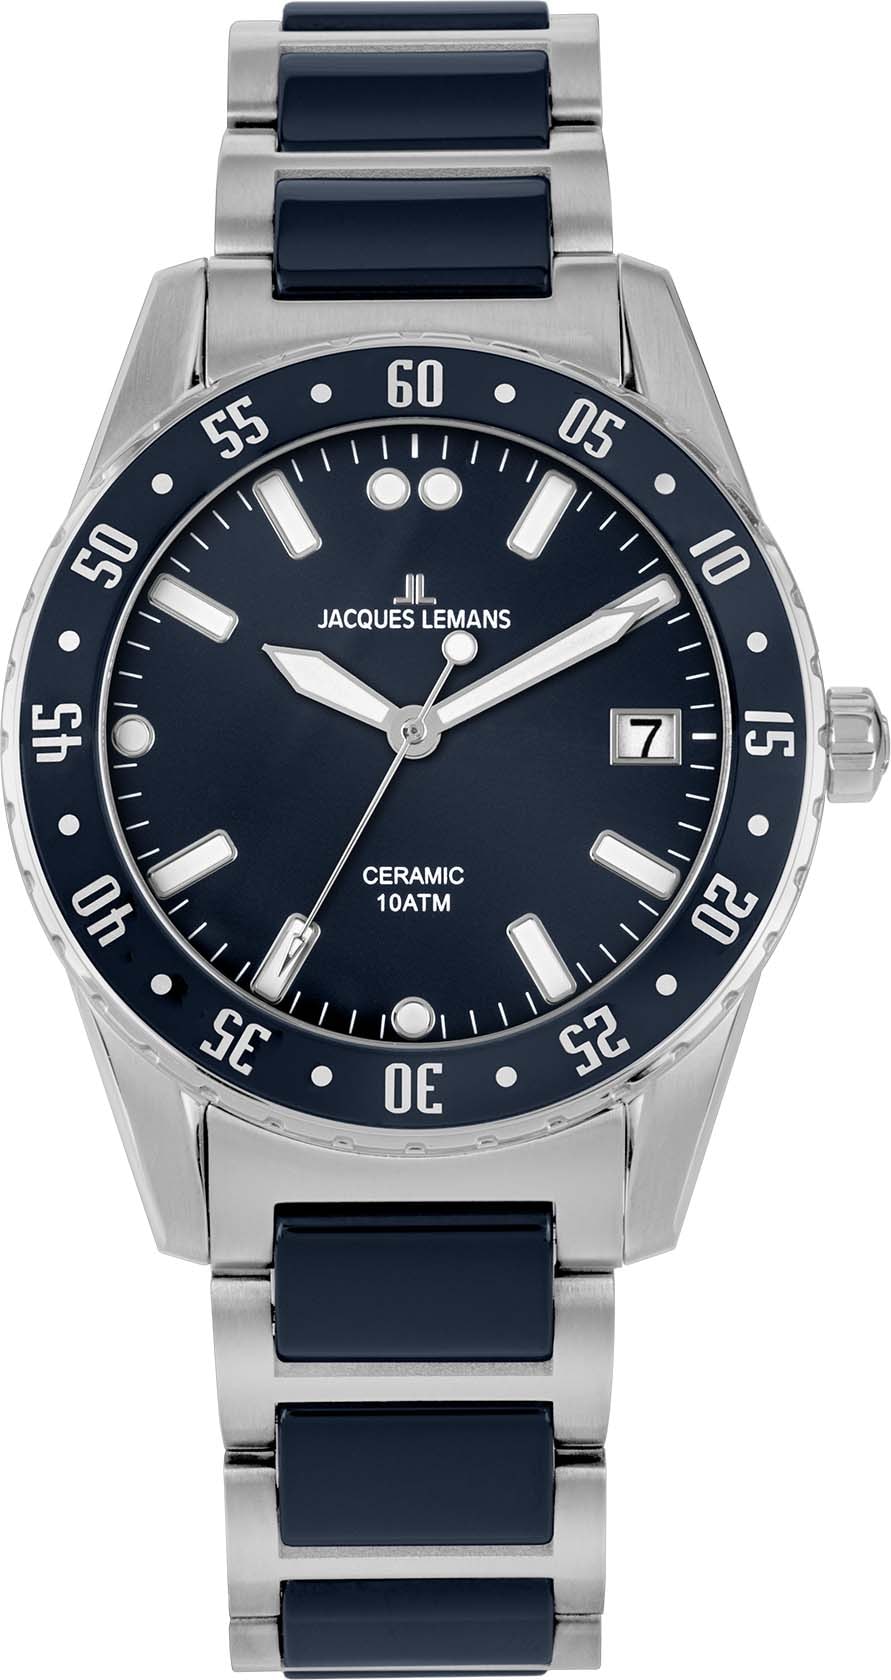 Jacques Lemans Uhren für Herren jetzt günstig bestellen ▻